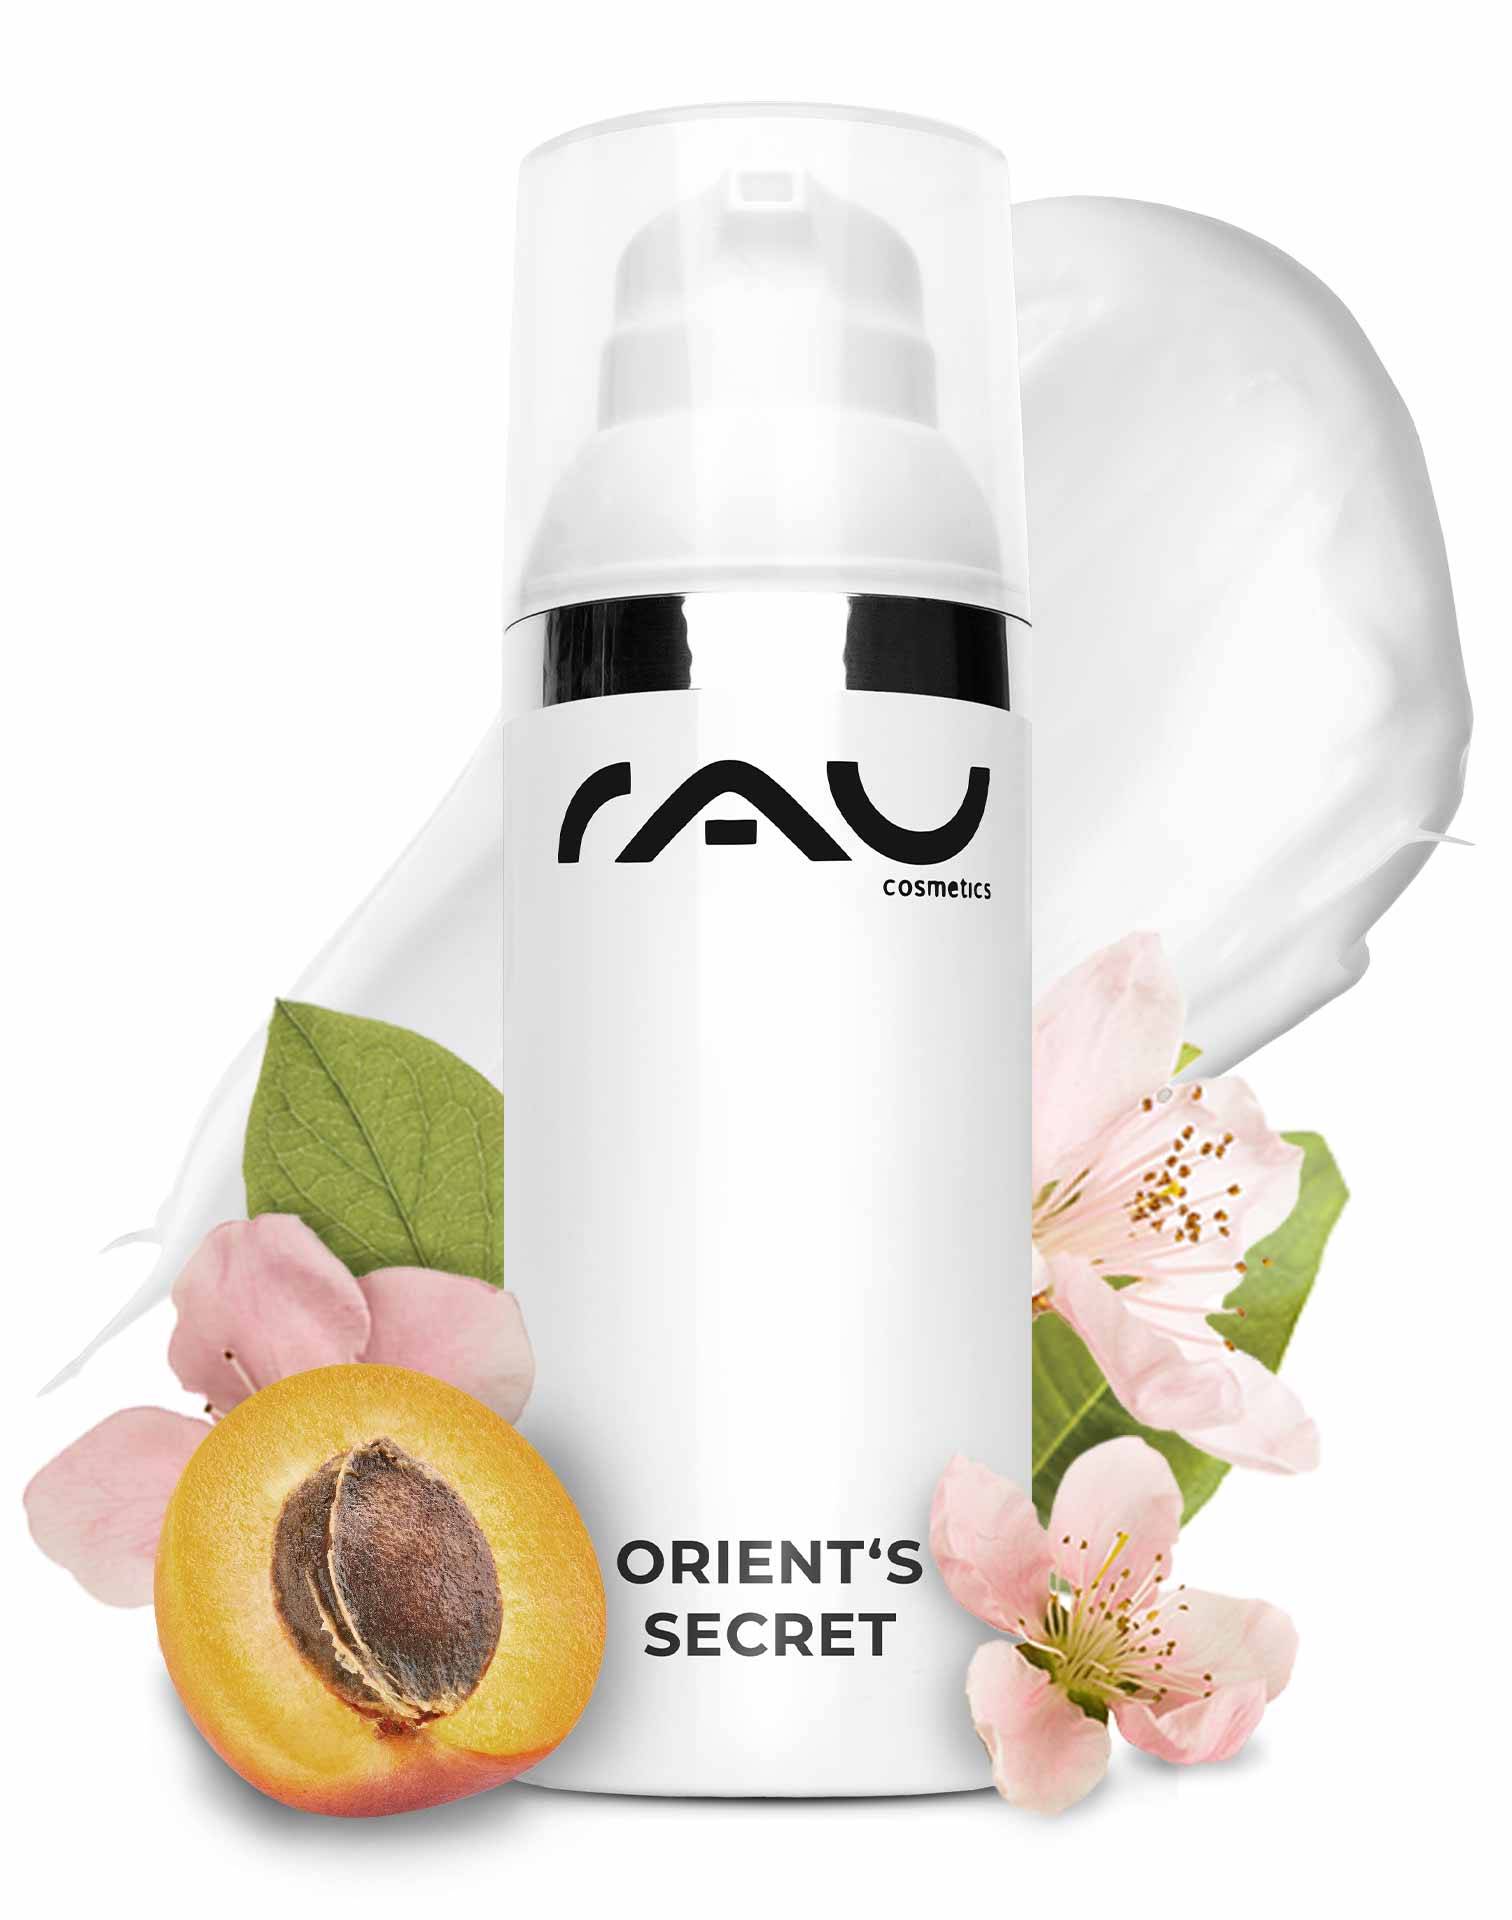 RAU Orient's Secret 50 ml - The Orient's Beauty Secret